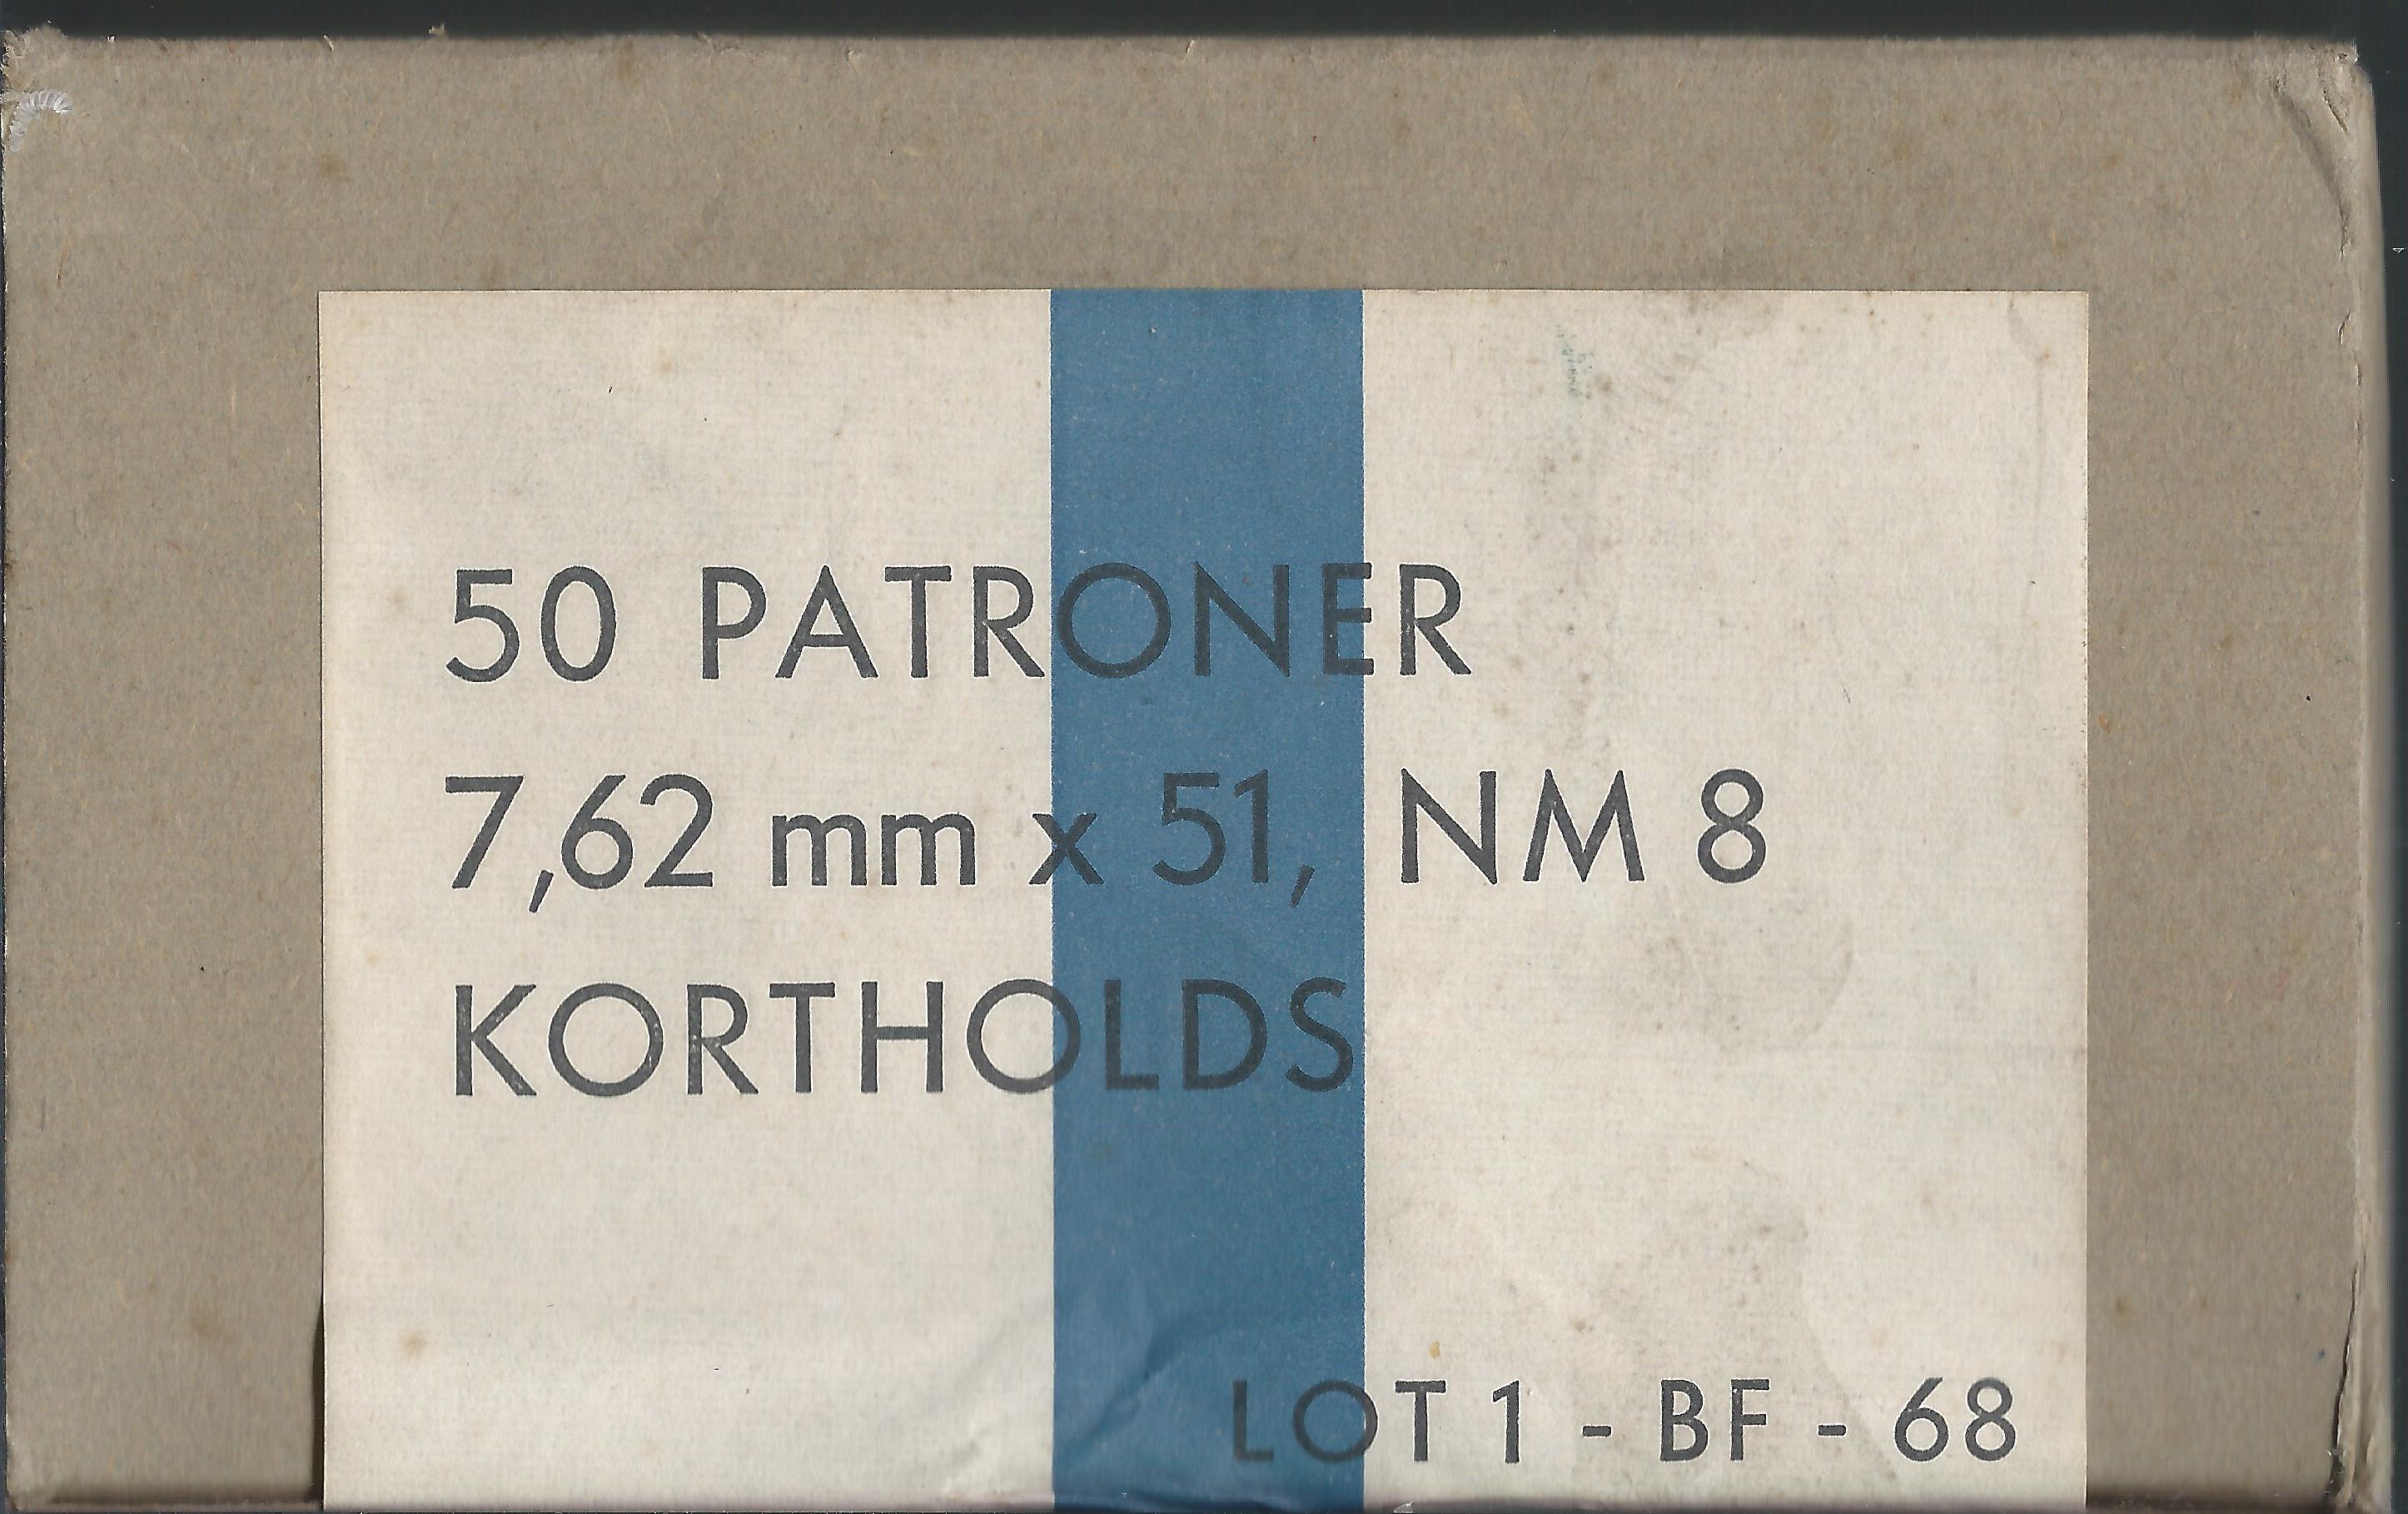 Eske-762x51-BF-korthold-50skudd-NM8-1-BF-68-1.jpg